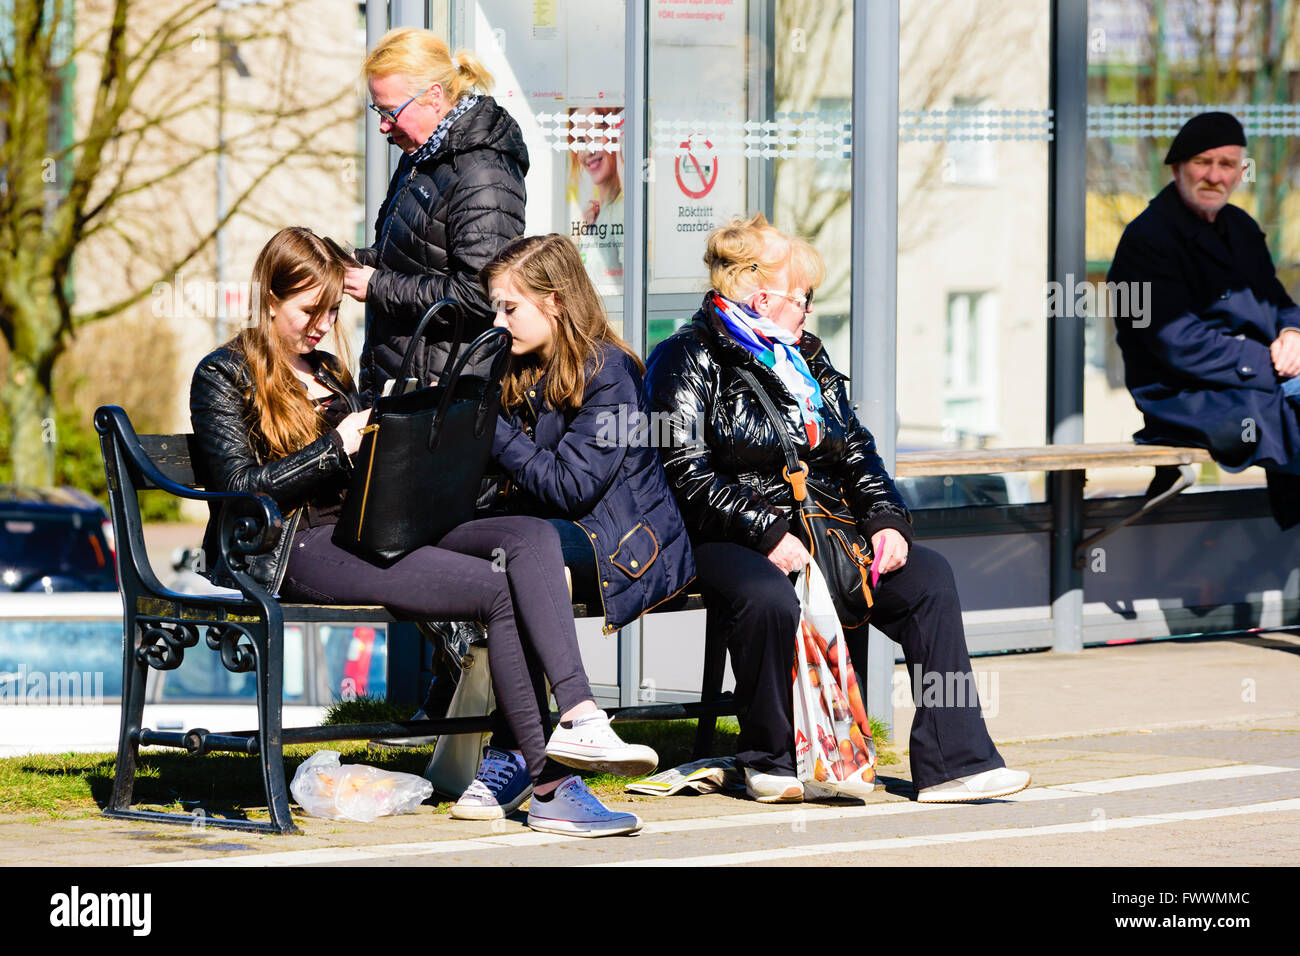 Simrishamn, Schweden - 1. April 2016: Menschen warten auf einen Bus außerhalb einer Wartehalle. Echte Menschen im Alltag. Stockfoto